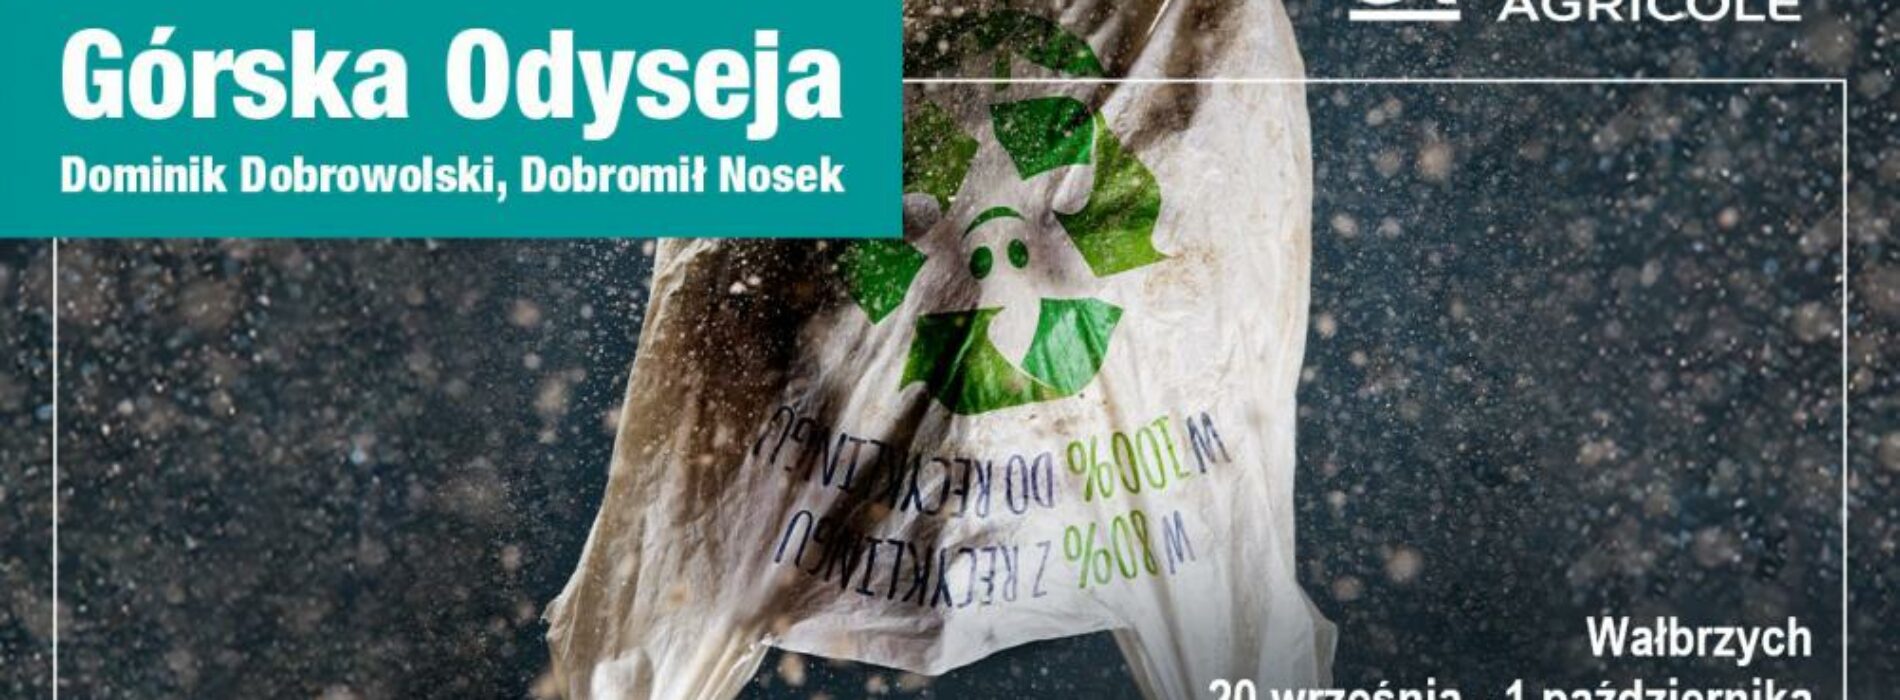 Śmieciowe skarby na ekologicznej wystawie w Wałbrzychu